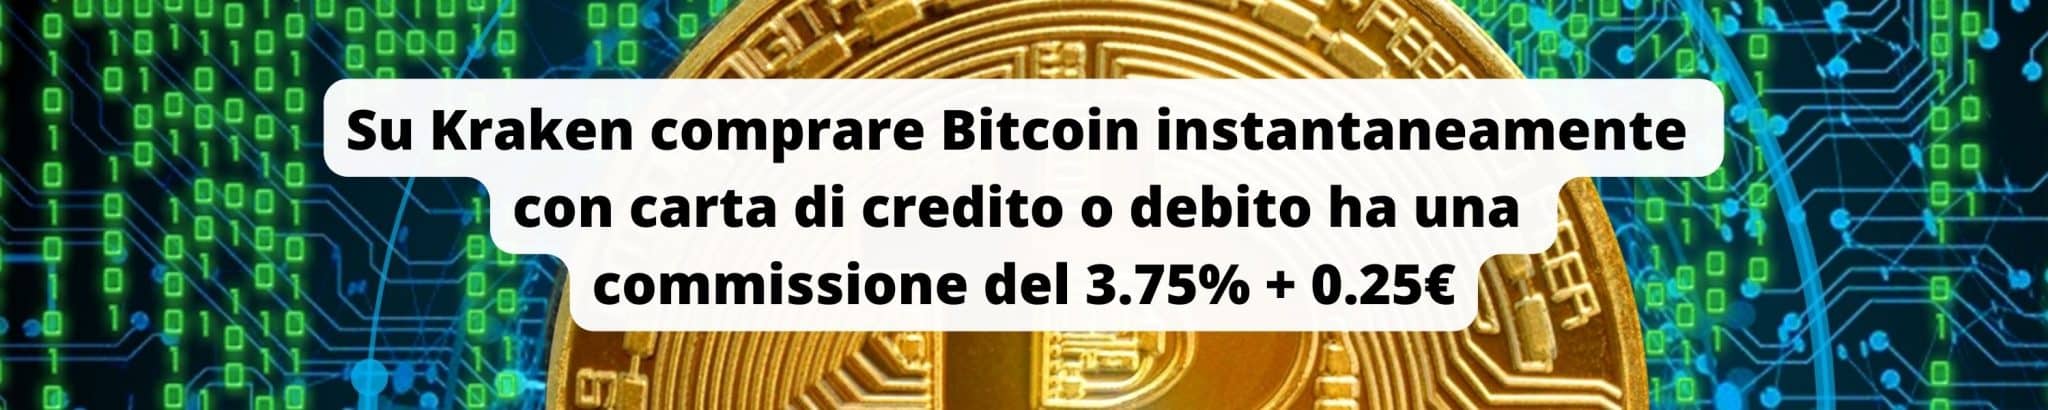 Comprare Bitcoin su Kraken con carta ha una commissione del 3.75% + 0.25€